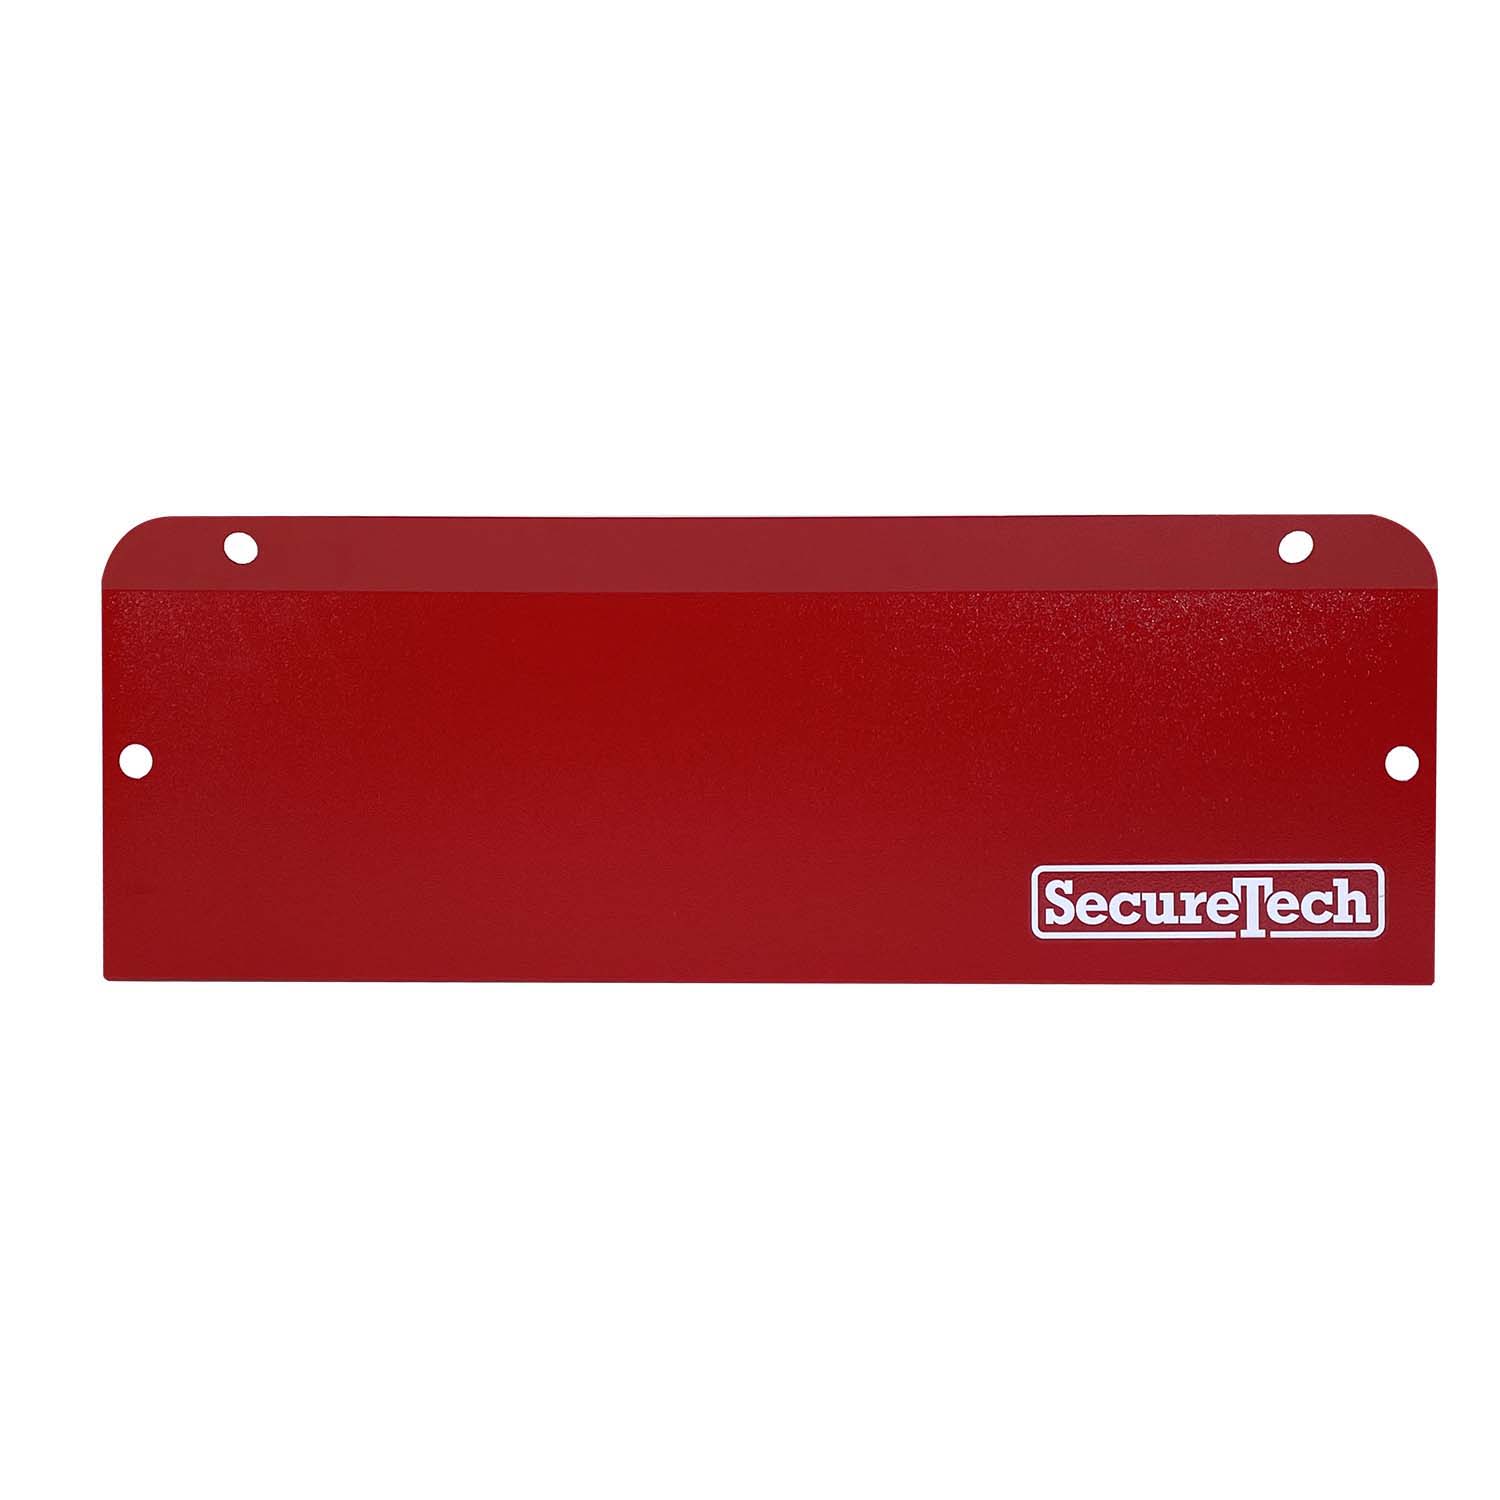 SecureTech SecureTech MP-A-S